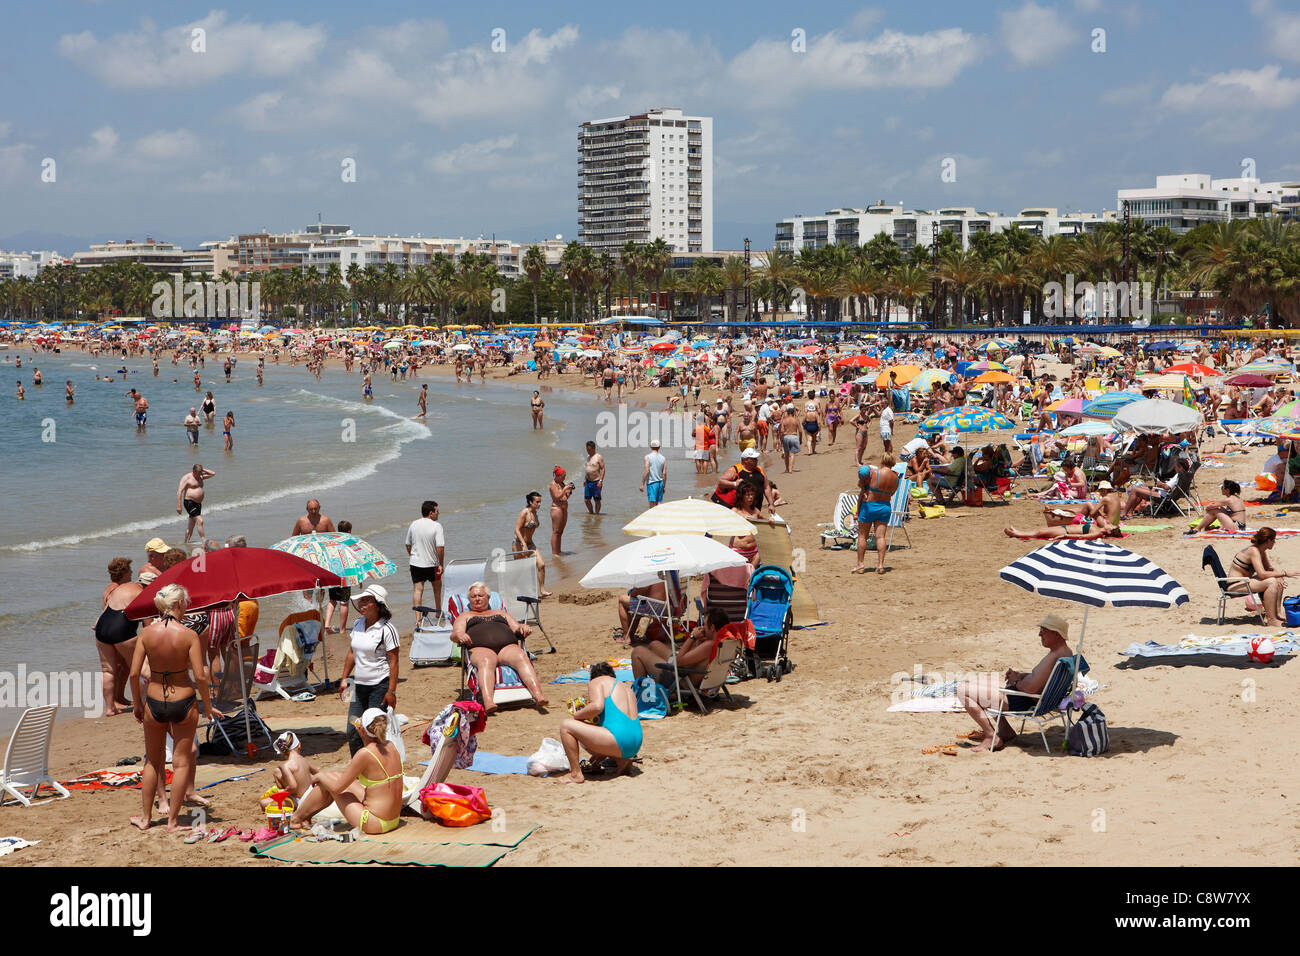 Turisti sulla affollata spiaggia di Llevant. Salou, Catalogna, Spagna. Foto Stock